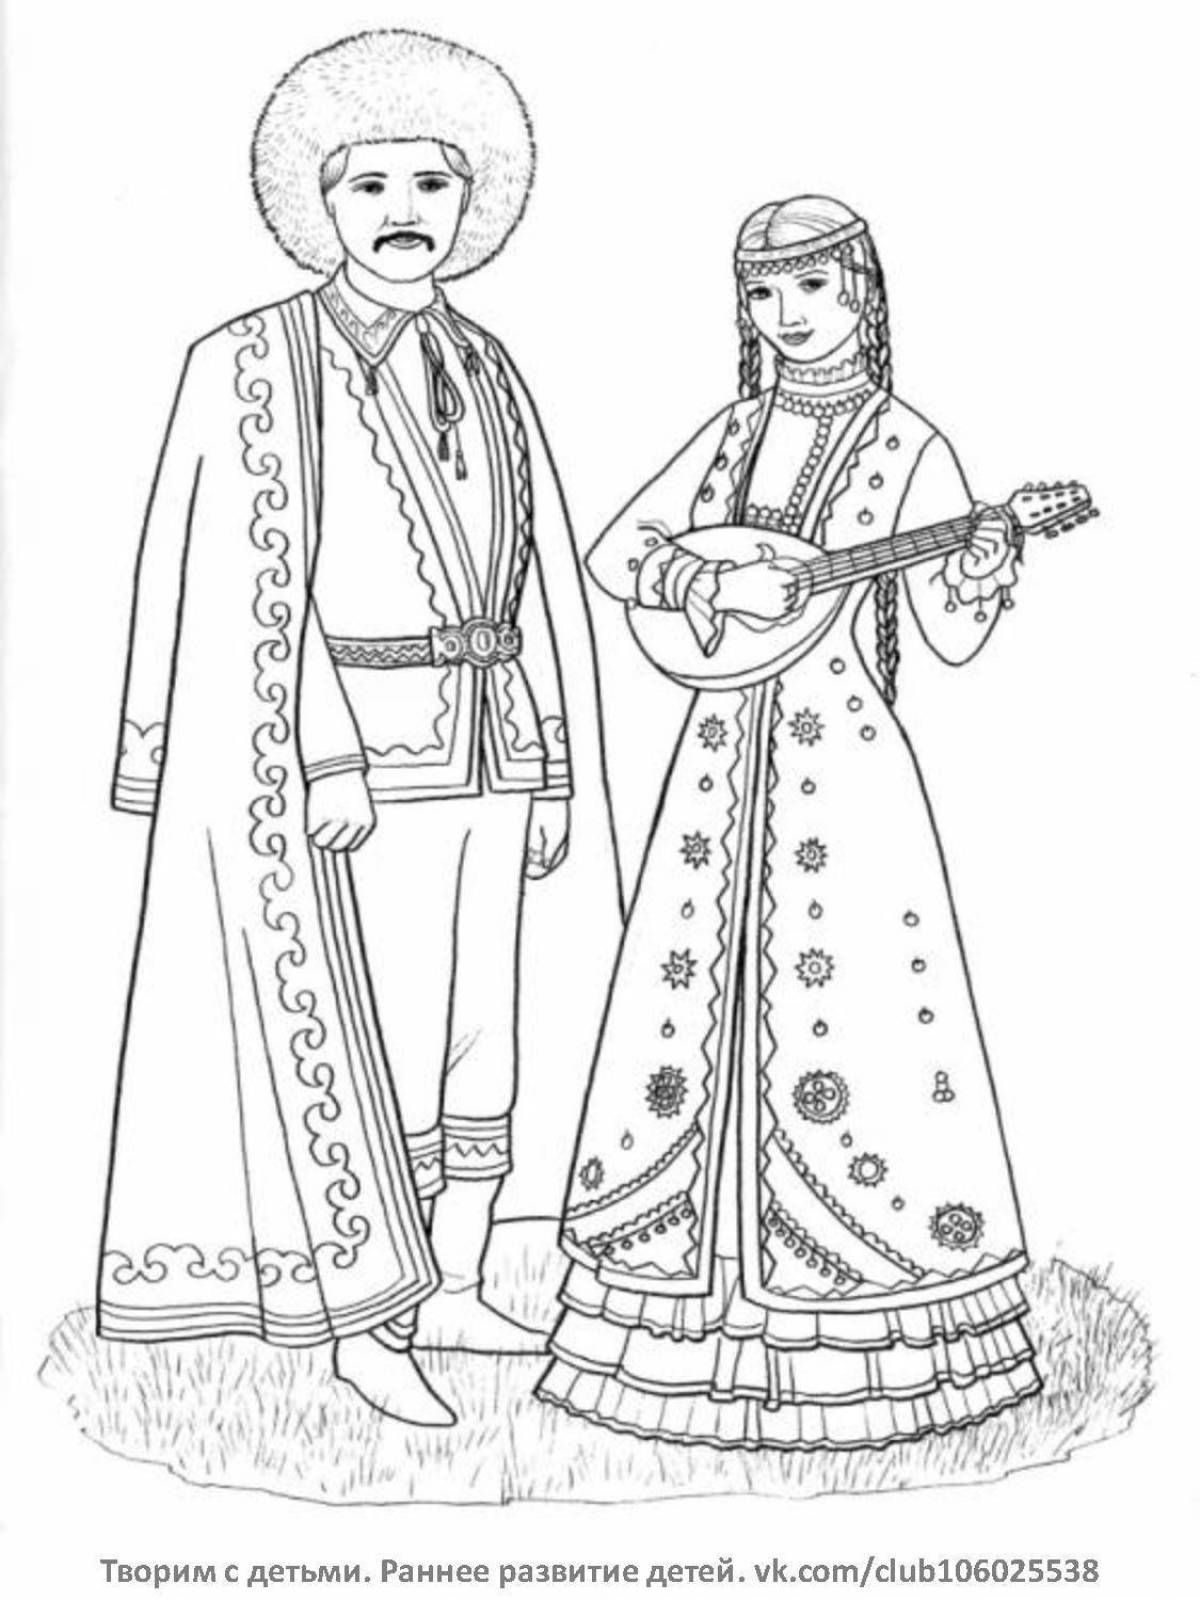 Подробная раскраска армянского народного костюма